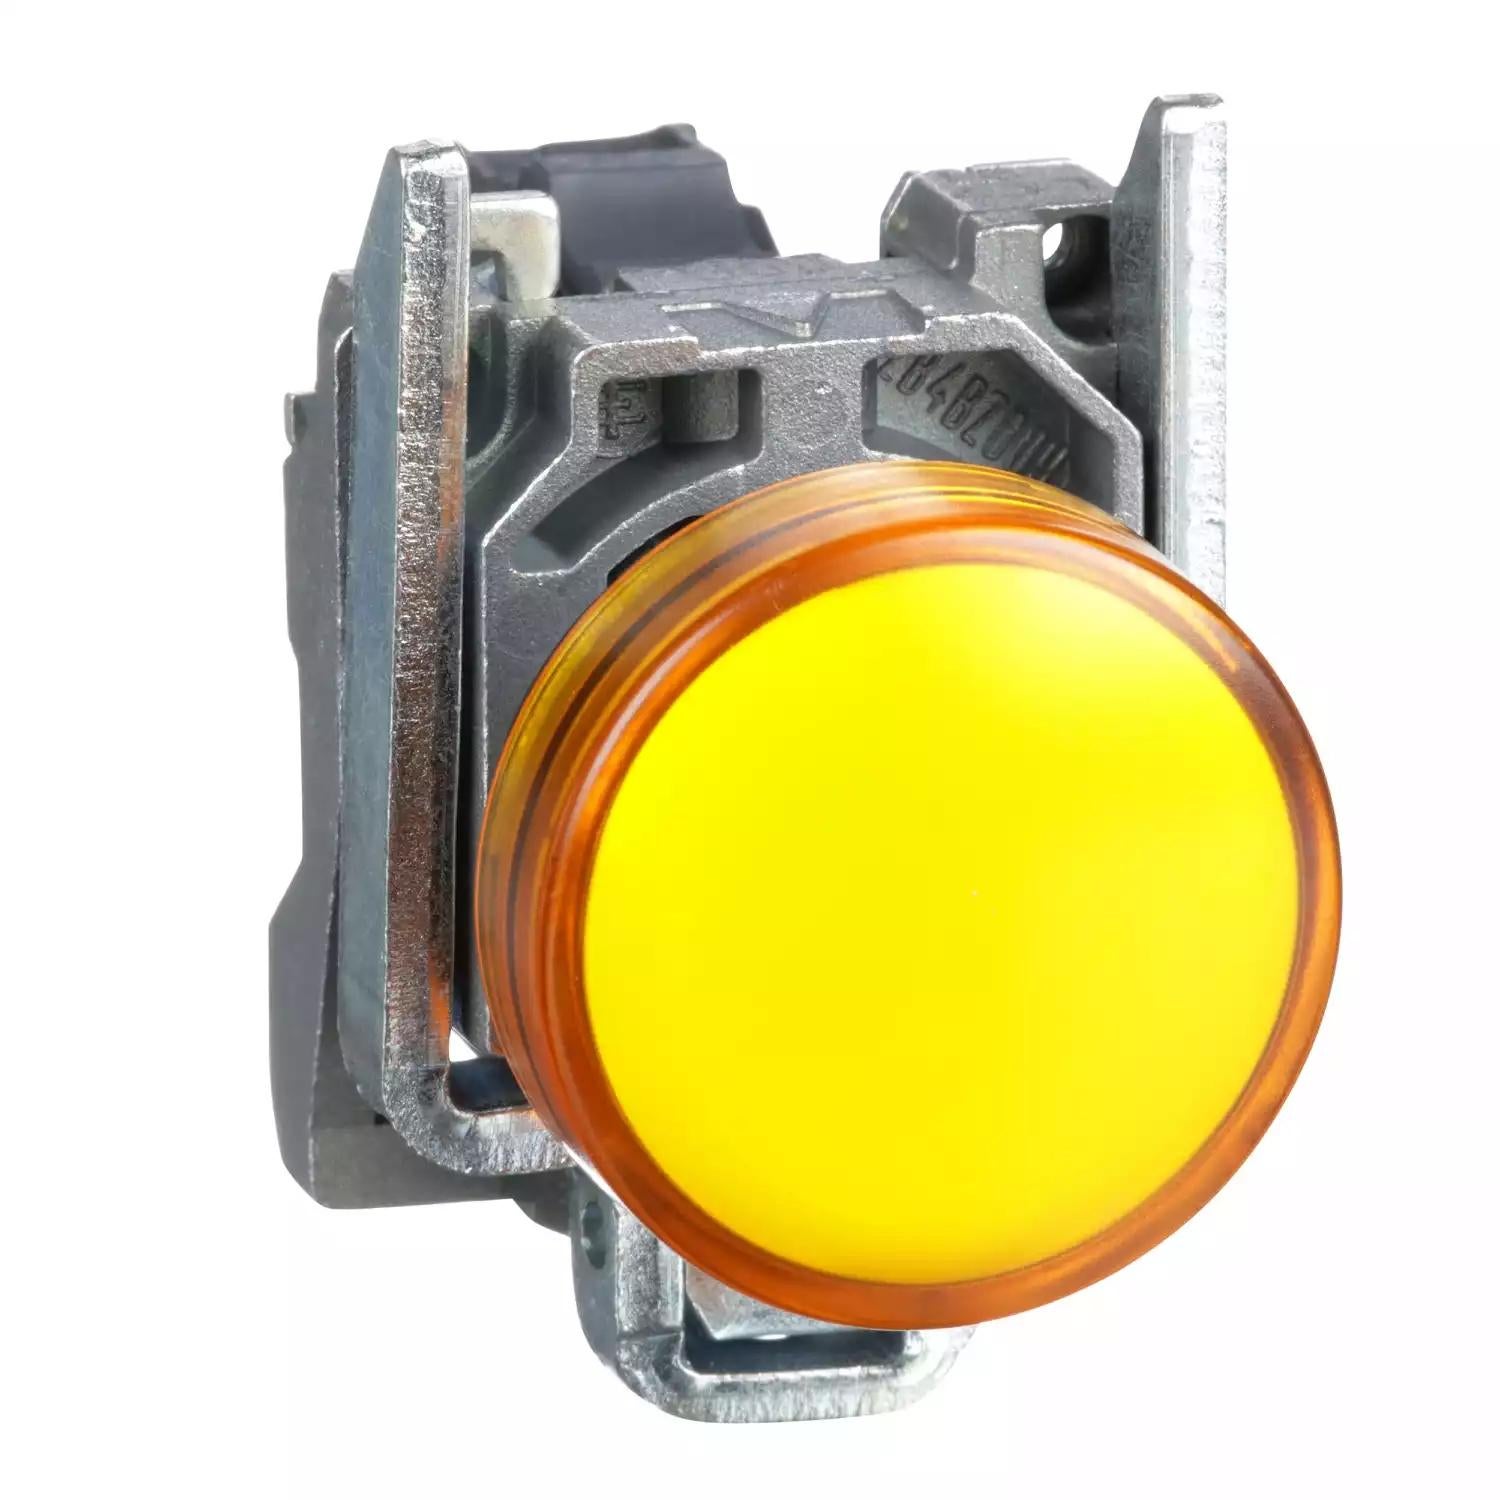 Harmony XB4, Pilot light, metal, orange, Ø22, plain lens with integral LED, 110…120 VAC